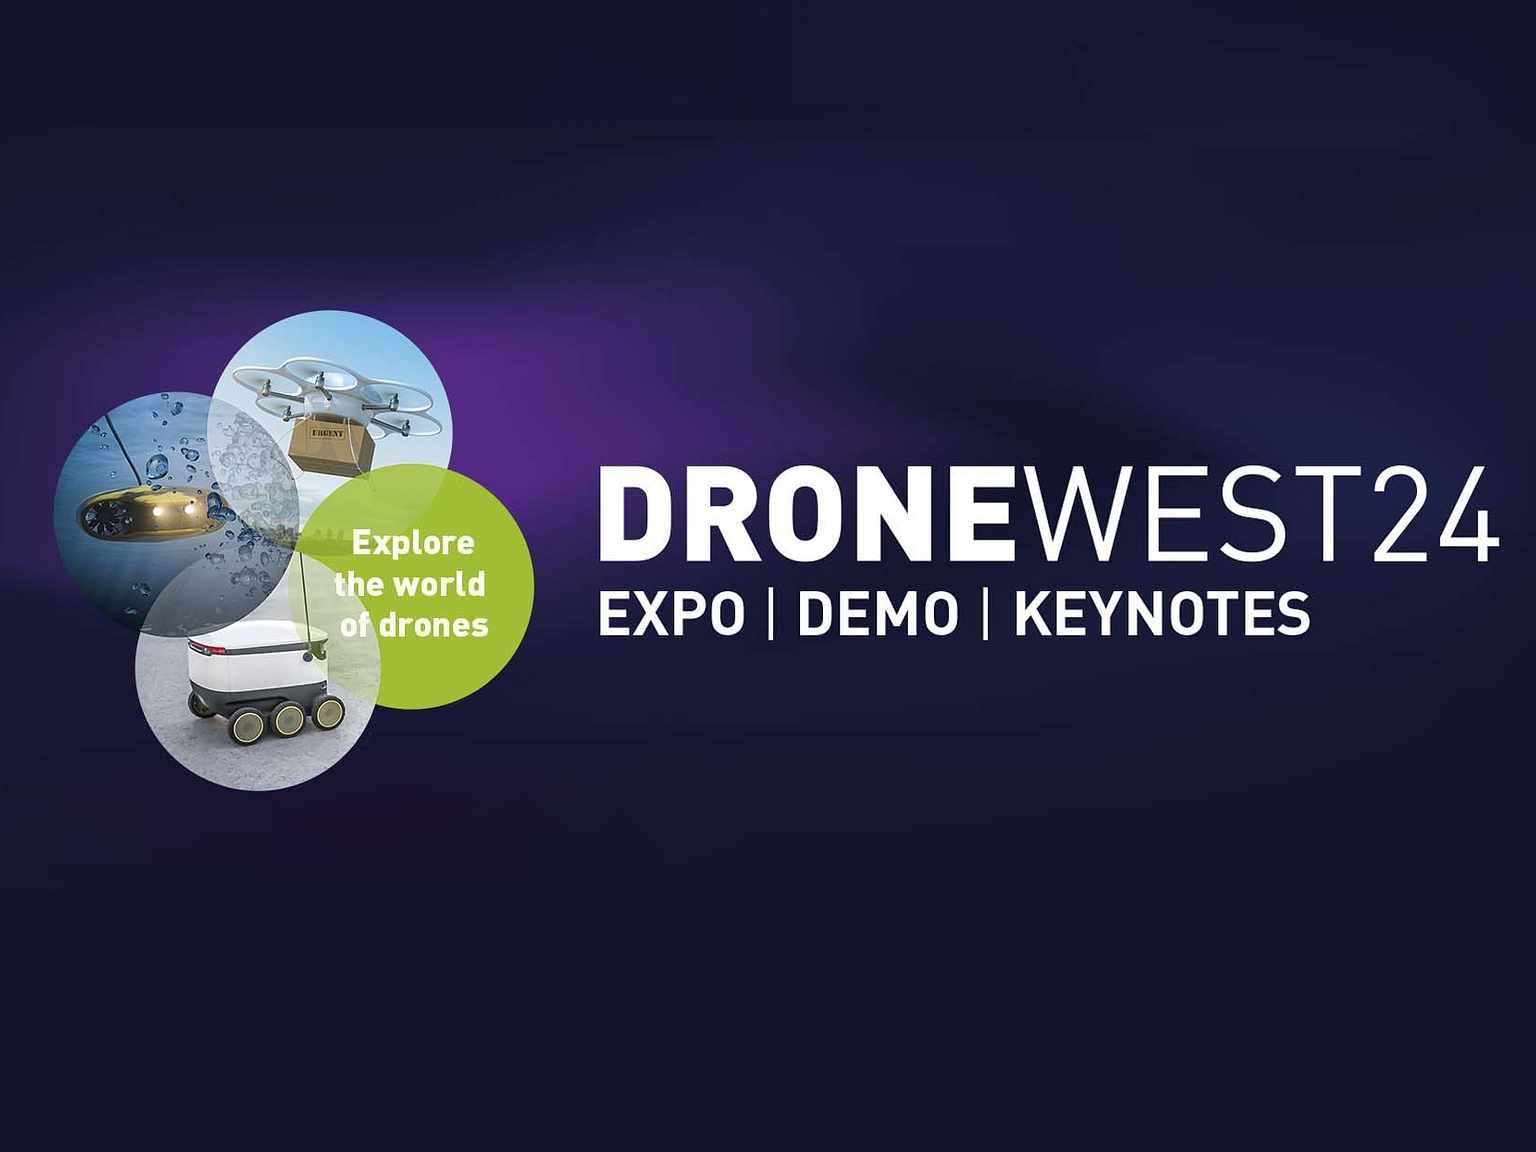 Claim nu een plaats voor jouw bedrijf tijdens Drone West '24!